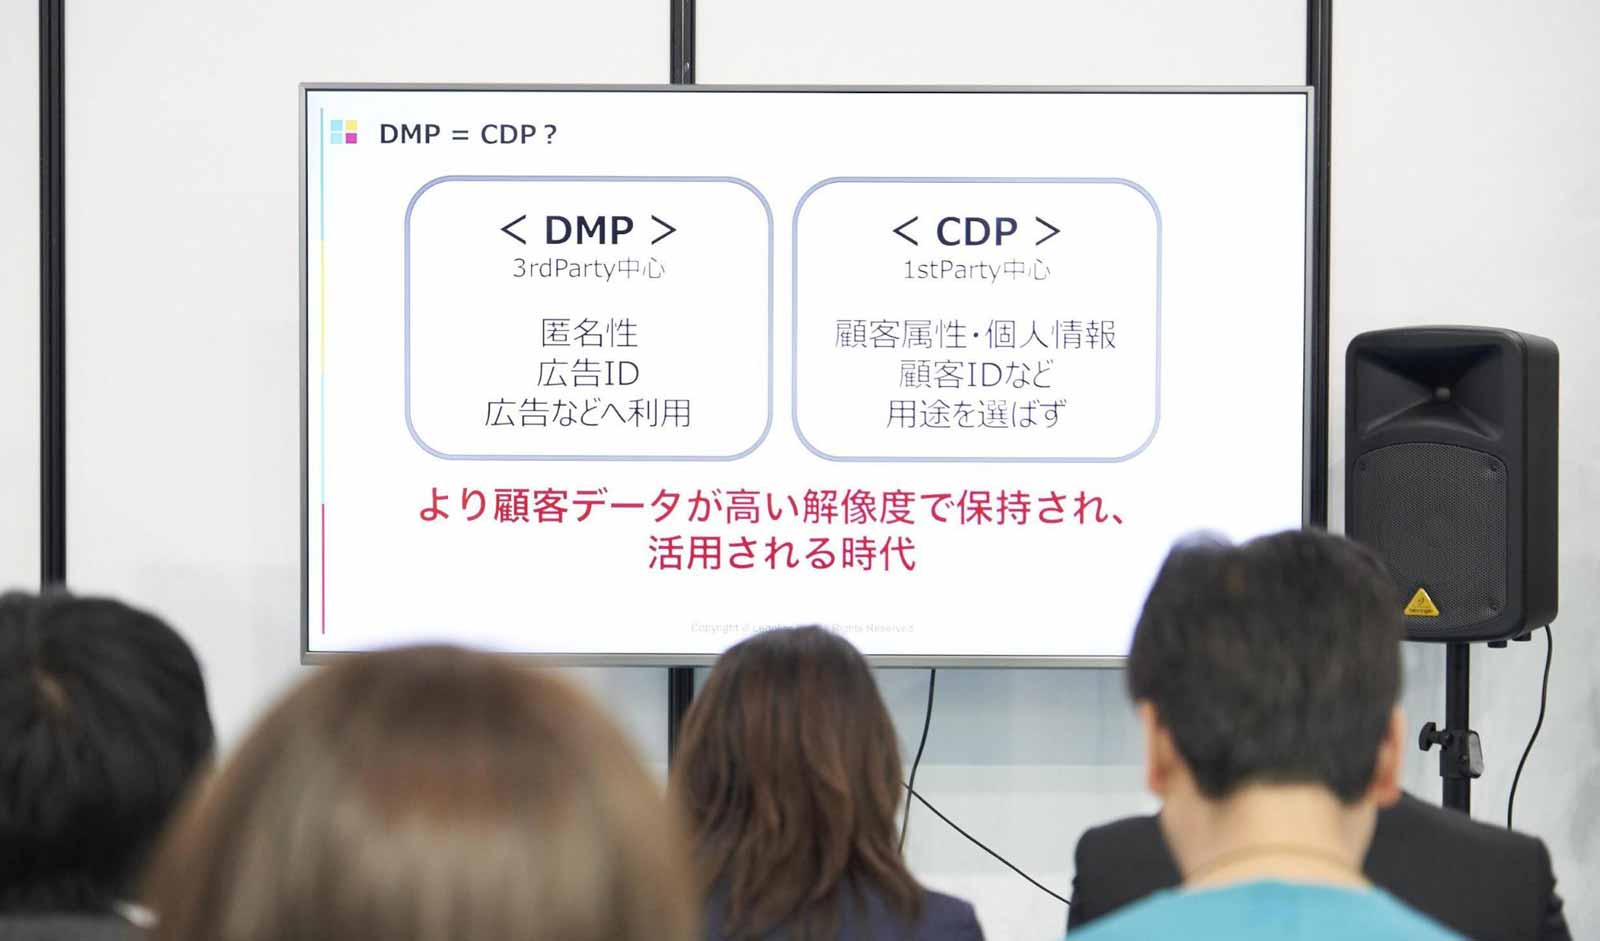 DMP（3rd Party中心：匿名性・広告ID・広告などへの利用） = CDP?（1st PArty中心：顧客属性・個人情報・顧客IDなど・用途を選ばず）より顧客データが高い解像度で保持され、活用される時代